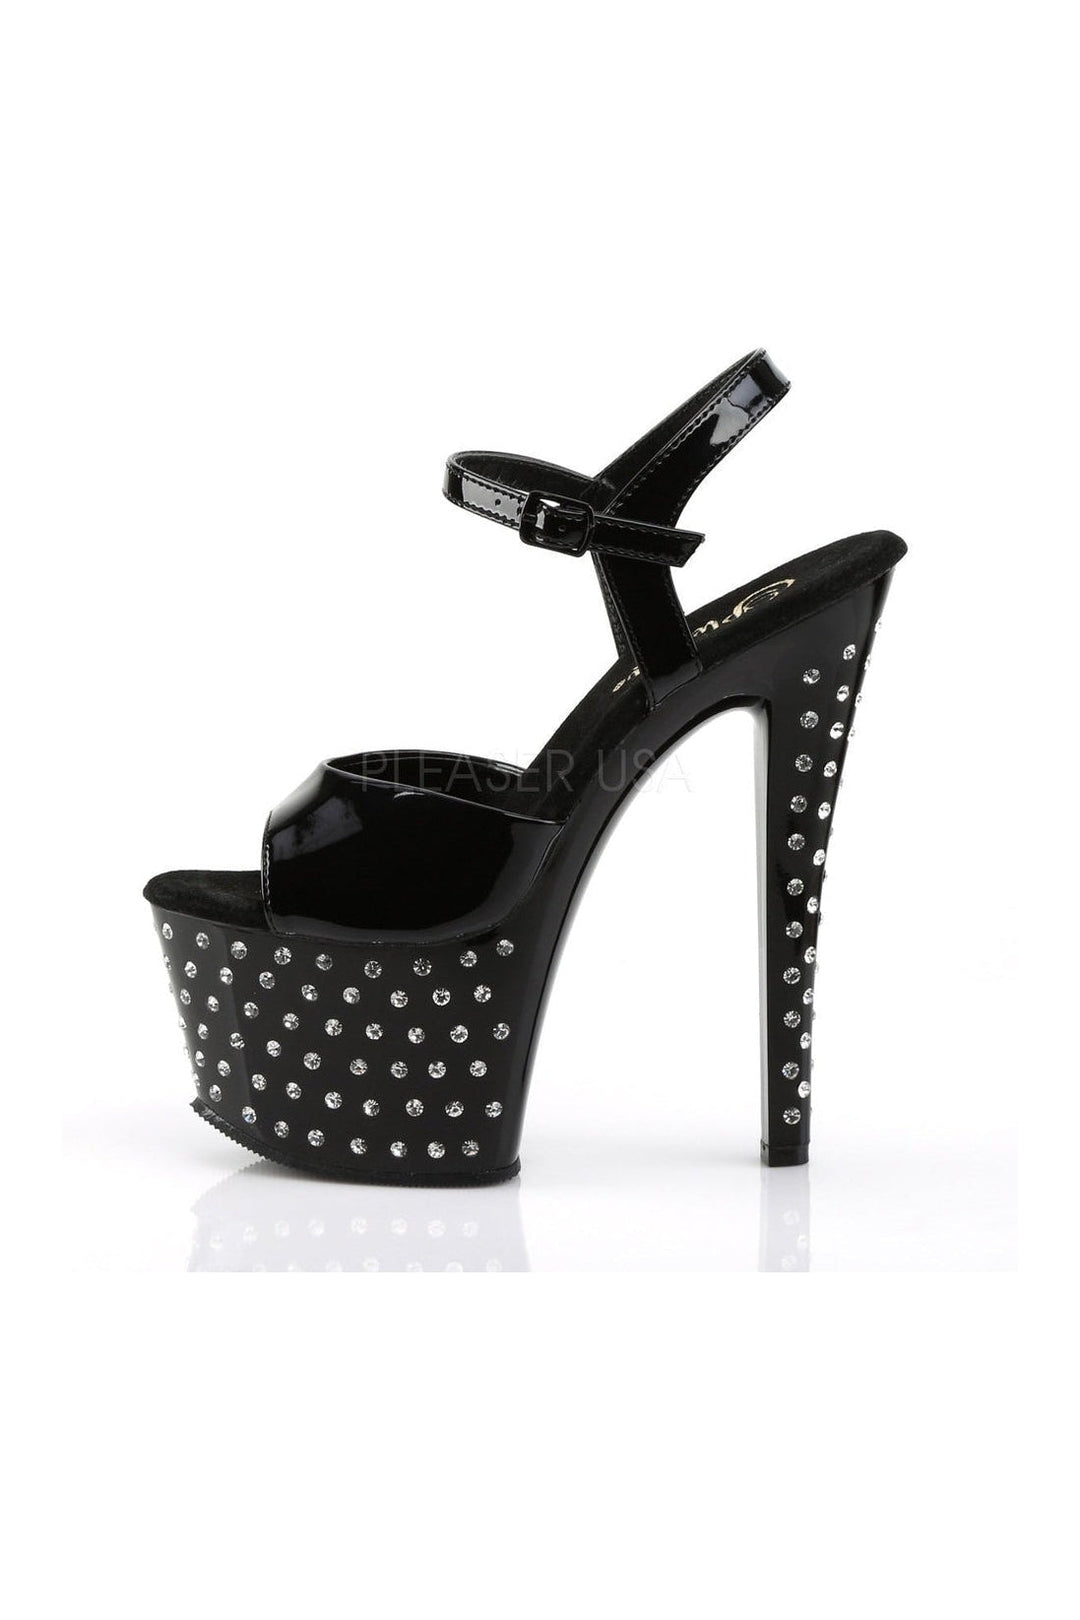 STARDUST-709 Platform Sandal | Black Patent-Pleaser-Sandals-SEXYSHOES.COM